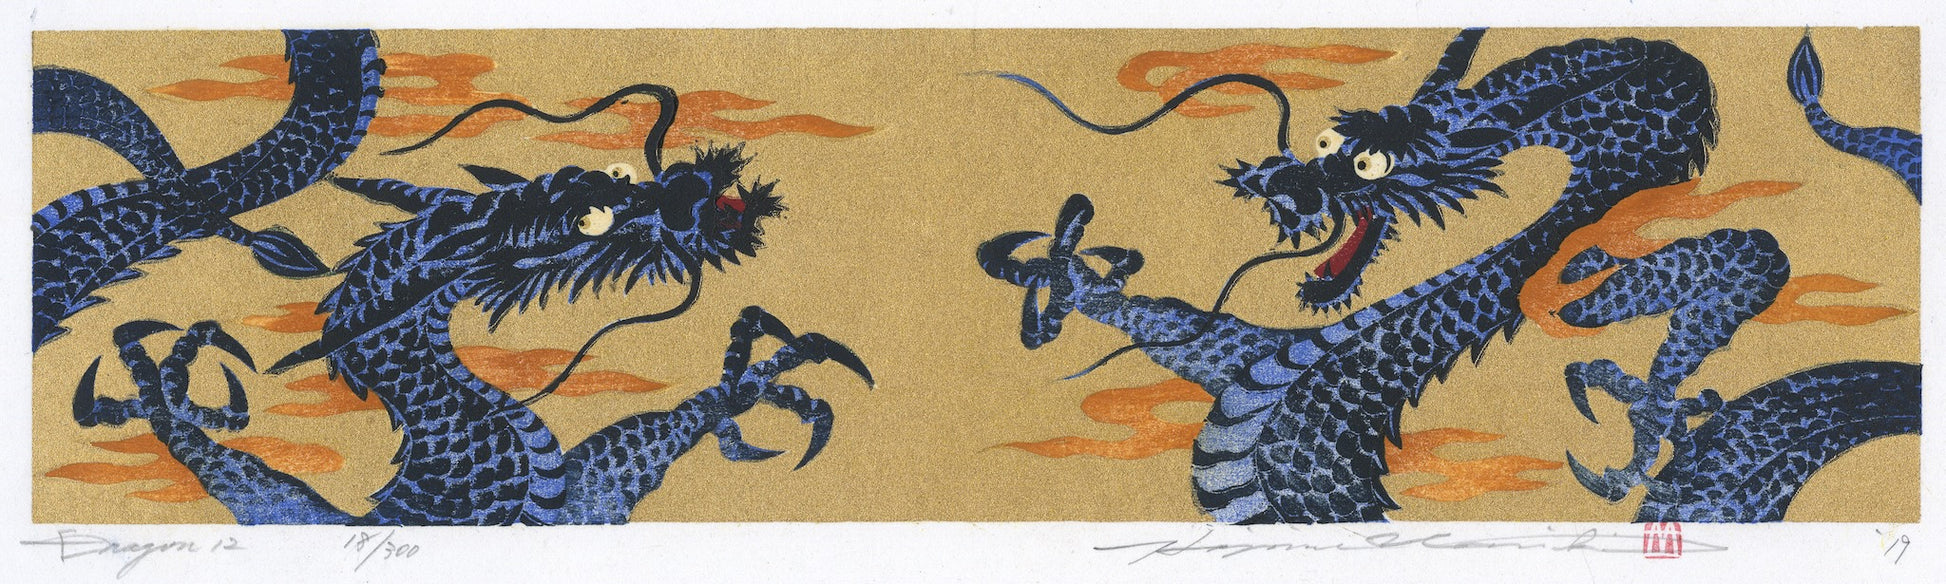 estampe japonaise deux dragons bleus dresséq face à face sur fond or